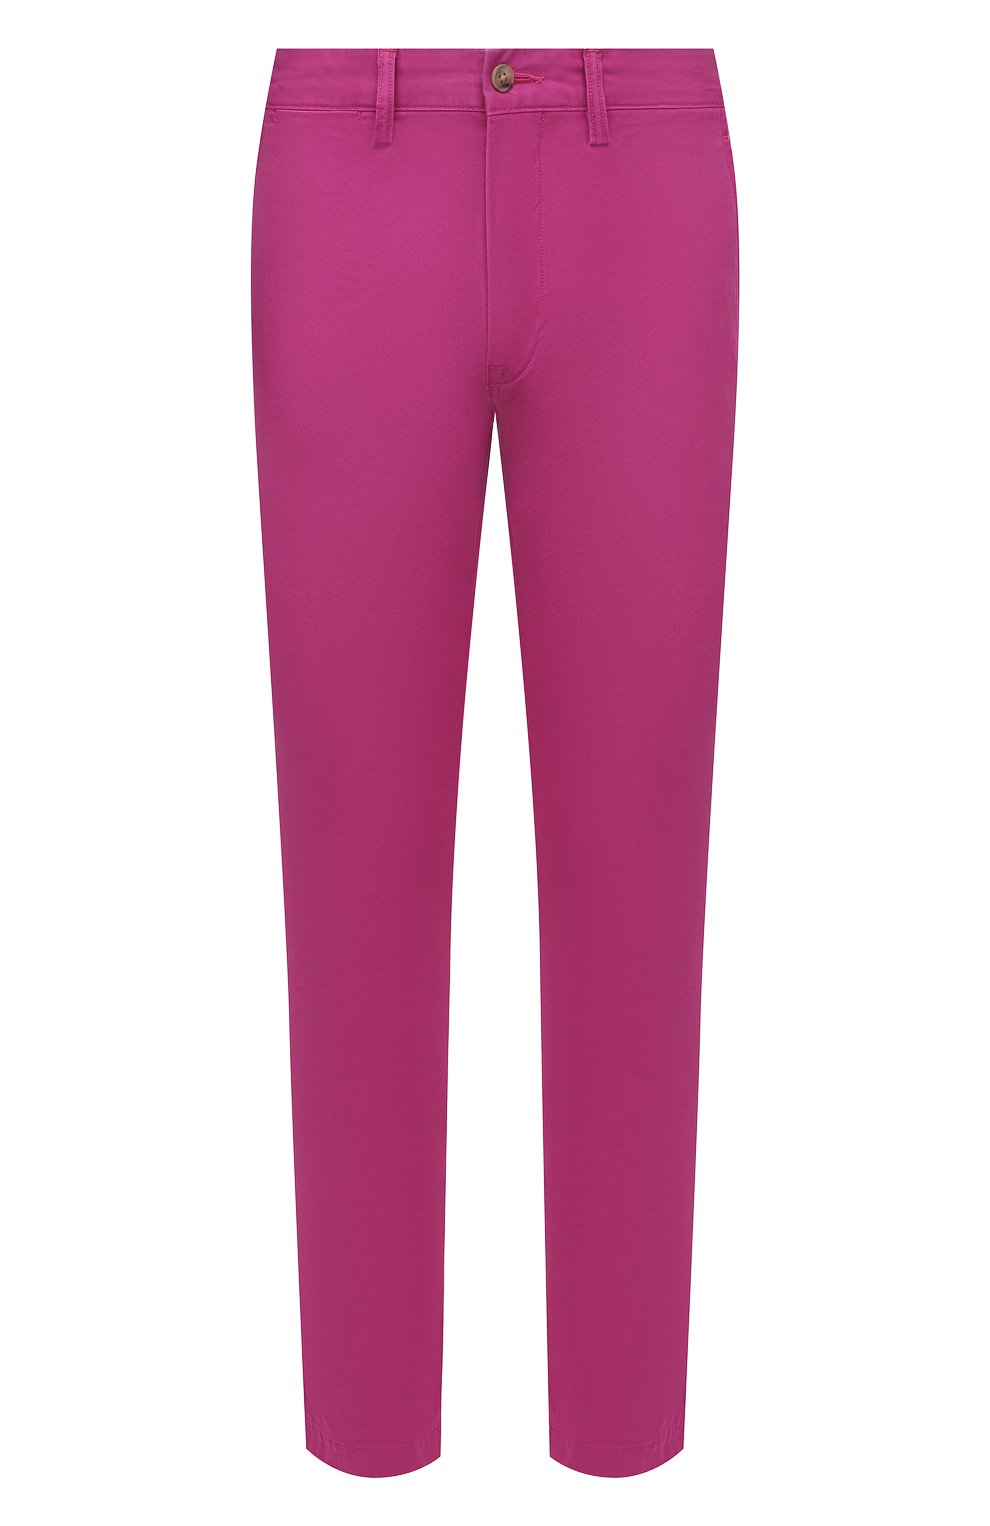 Мужские хлопковые брюки POLO RALPH LAUREN розового цвета, арт. 710704176 | Фото 1 (Длина (брюки, джинсы): Стандартные; Случай: Повседневный; Материал внешний: Хлопок; Стили: Романтичный)